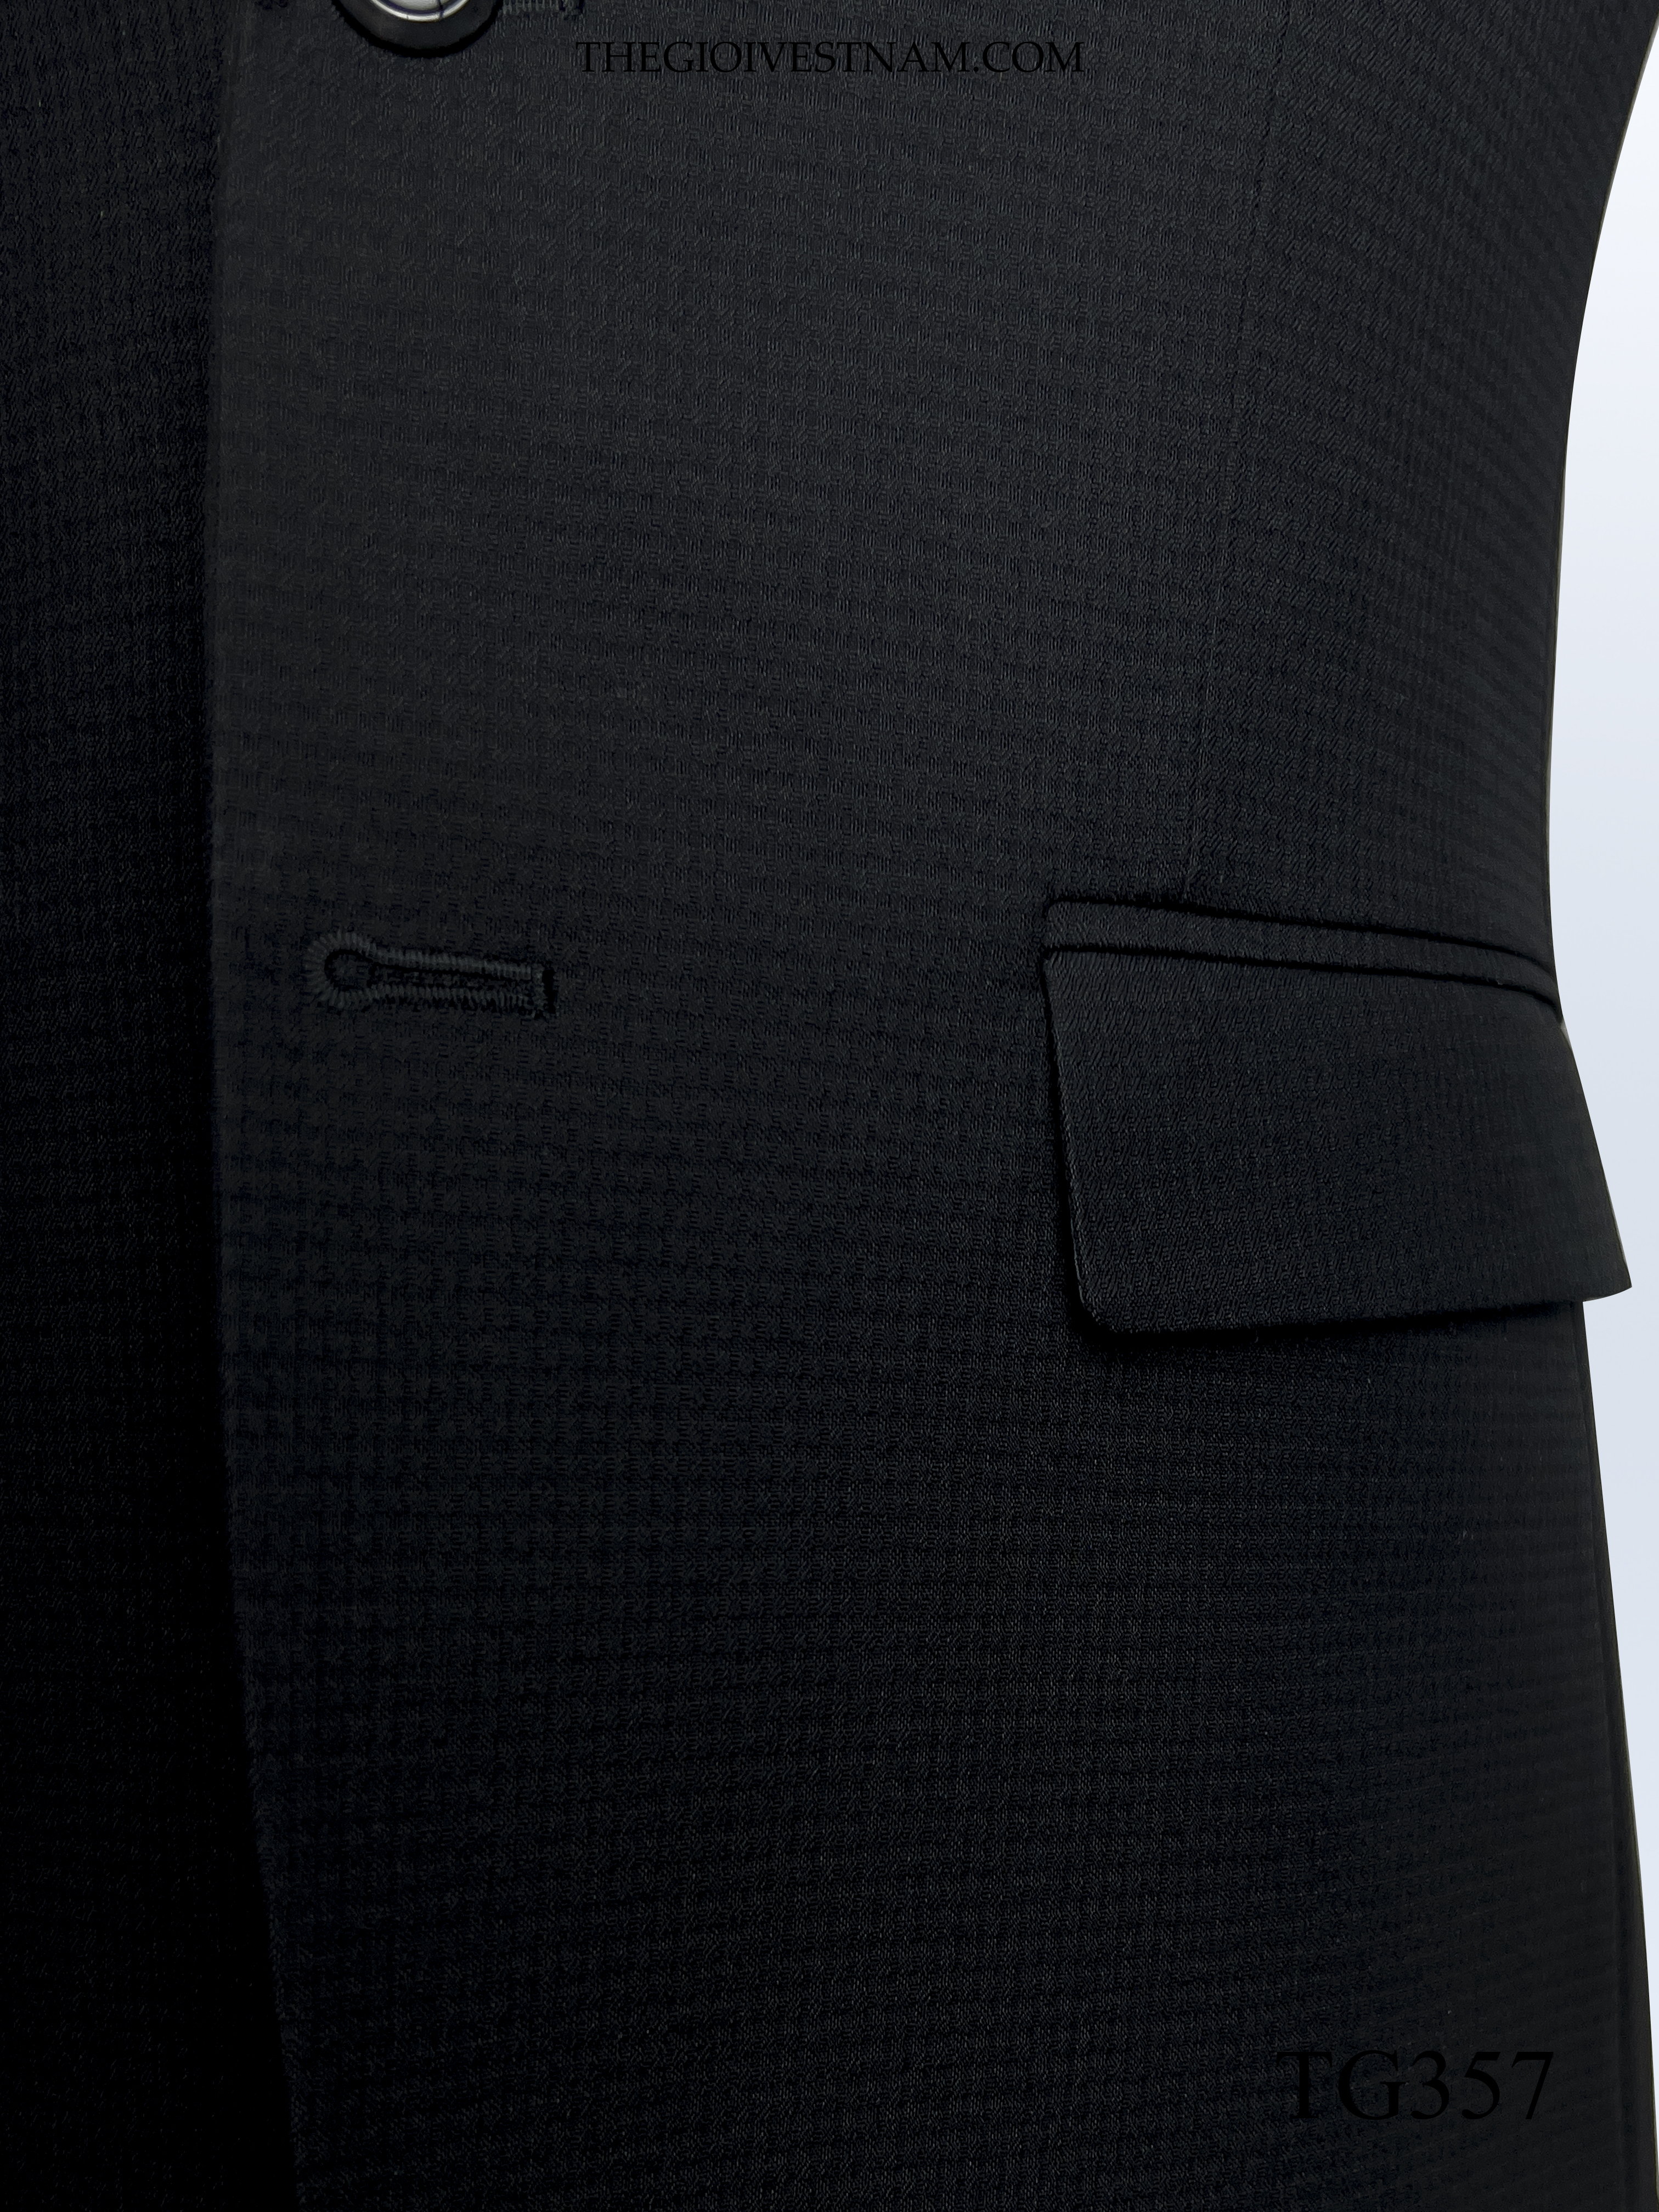 TG357 - Vest đen gân kẻ vuông #2